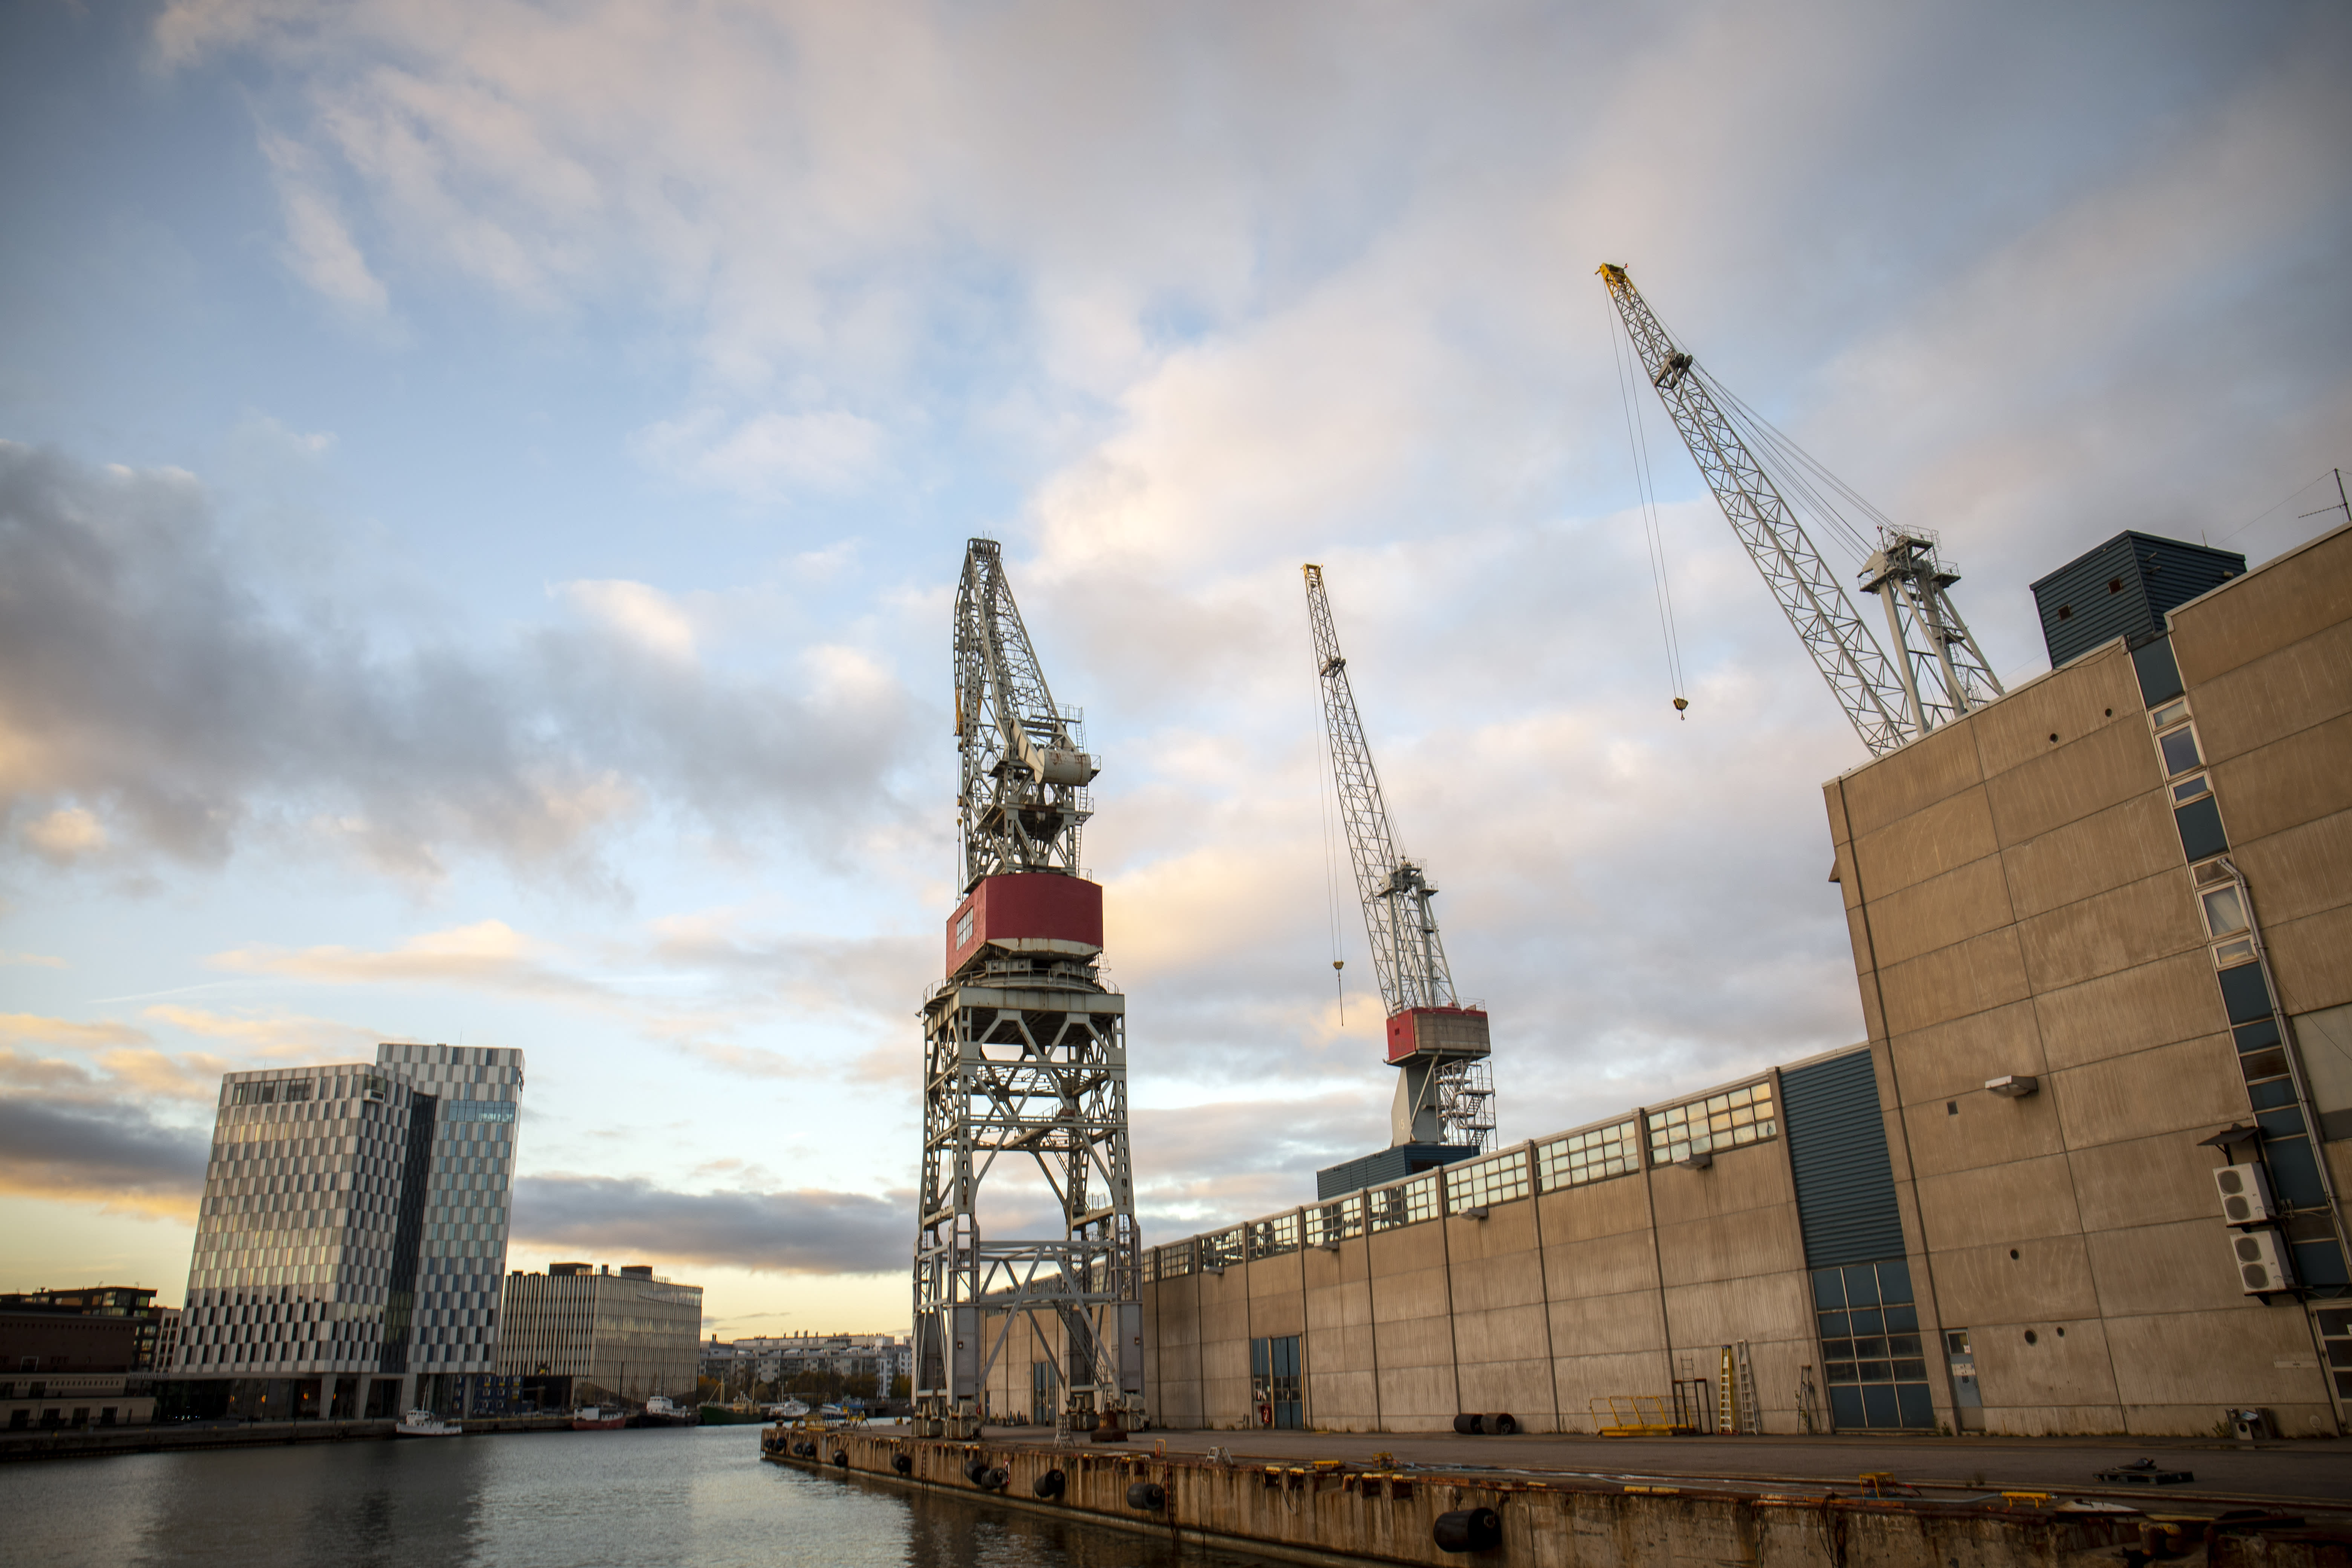 Helsinki Shipyard is building an icebreaker for a Russian mining company